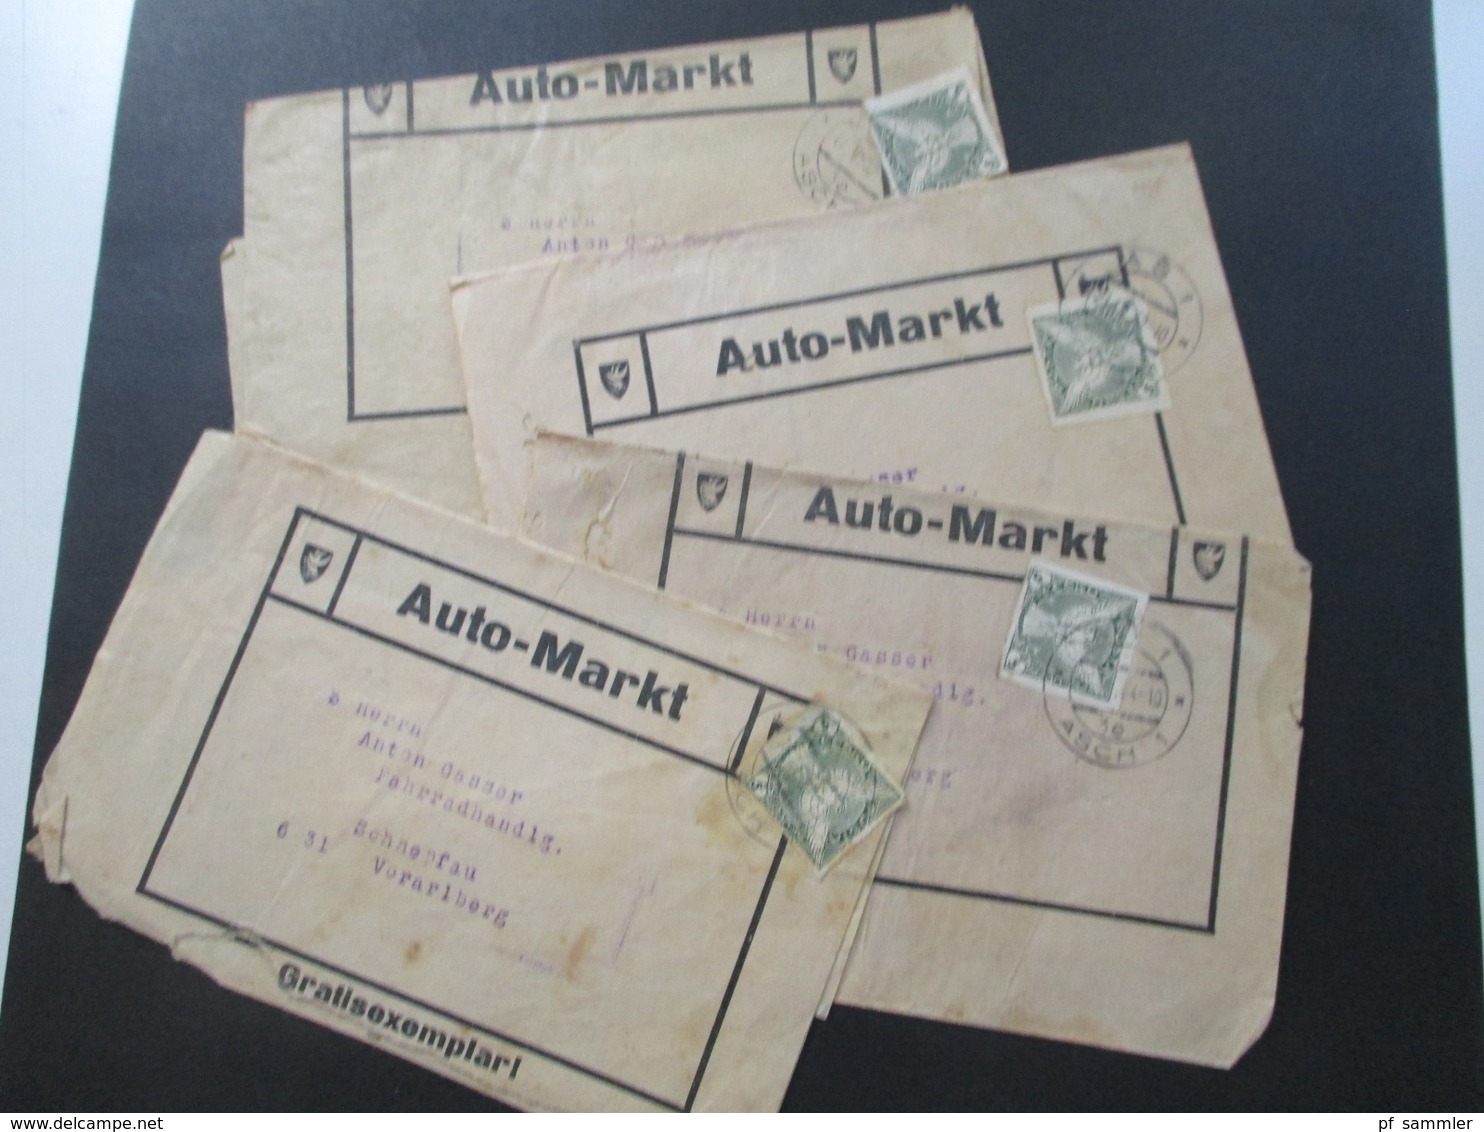 CSSR 1932 Streifbänder Auto Markt Gratisexemplar Stempel As 1 Asch (Sudetenland) Nach Schnepfau Fahrradhandlung - Covers & Documents